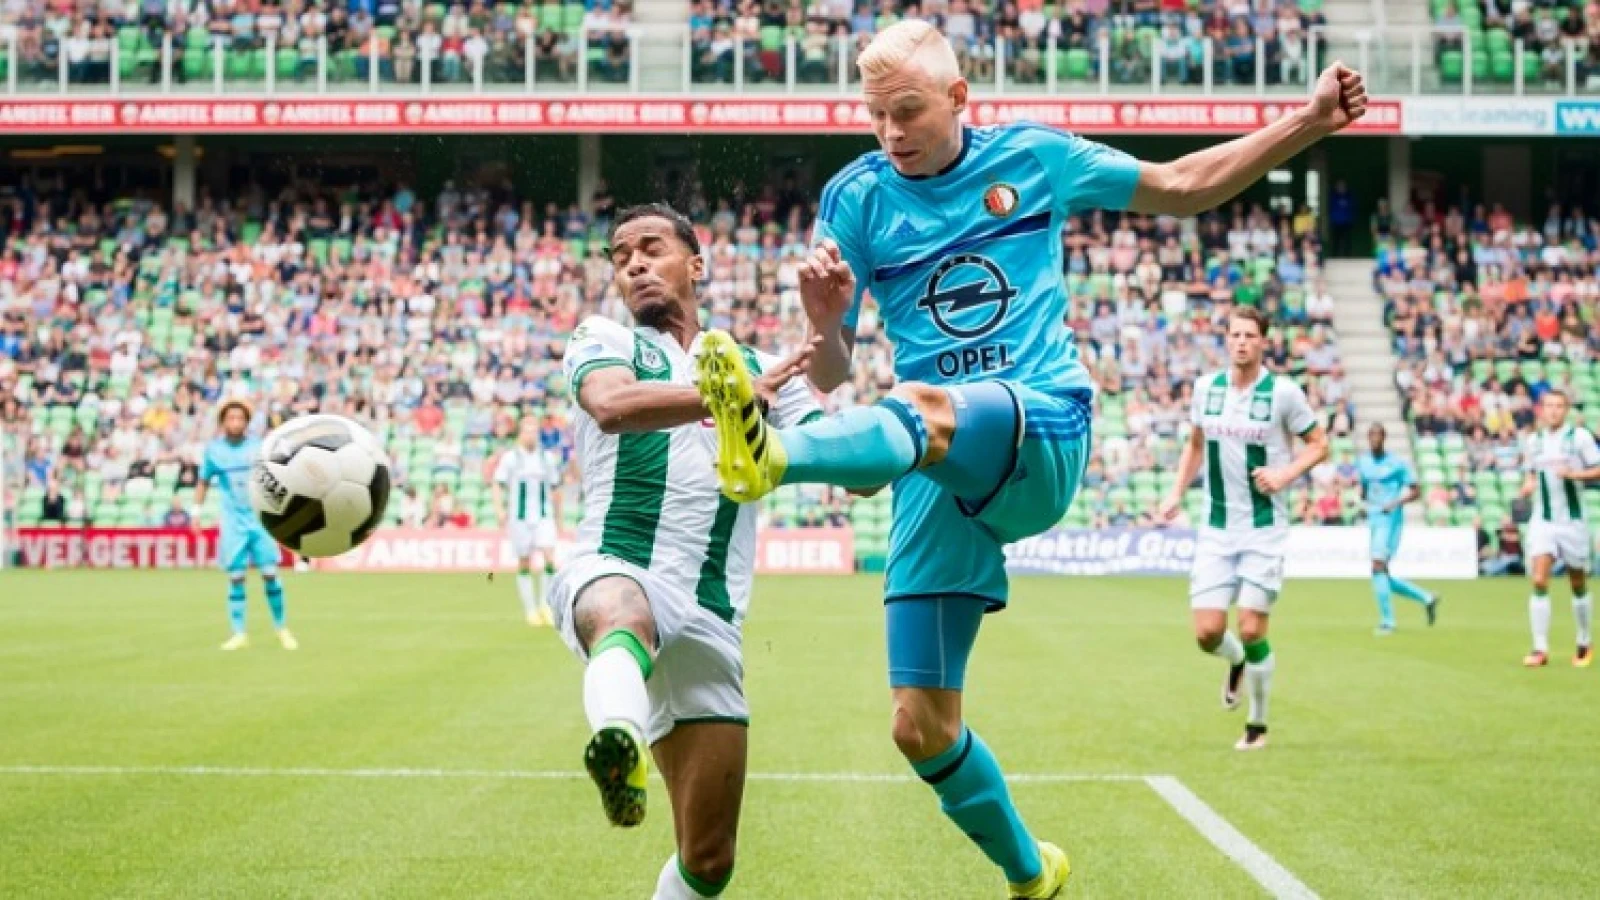 Opstelling bekend: Feyenoord wederom met Woudenberg, nieuweling opnieuw op de bank